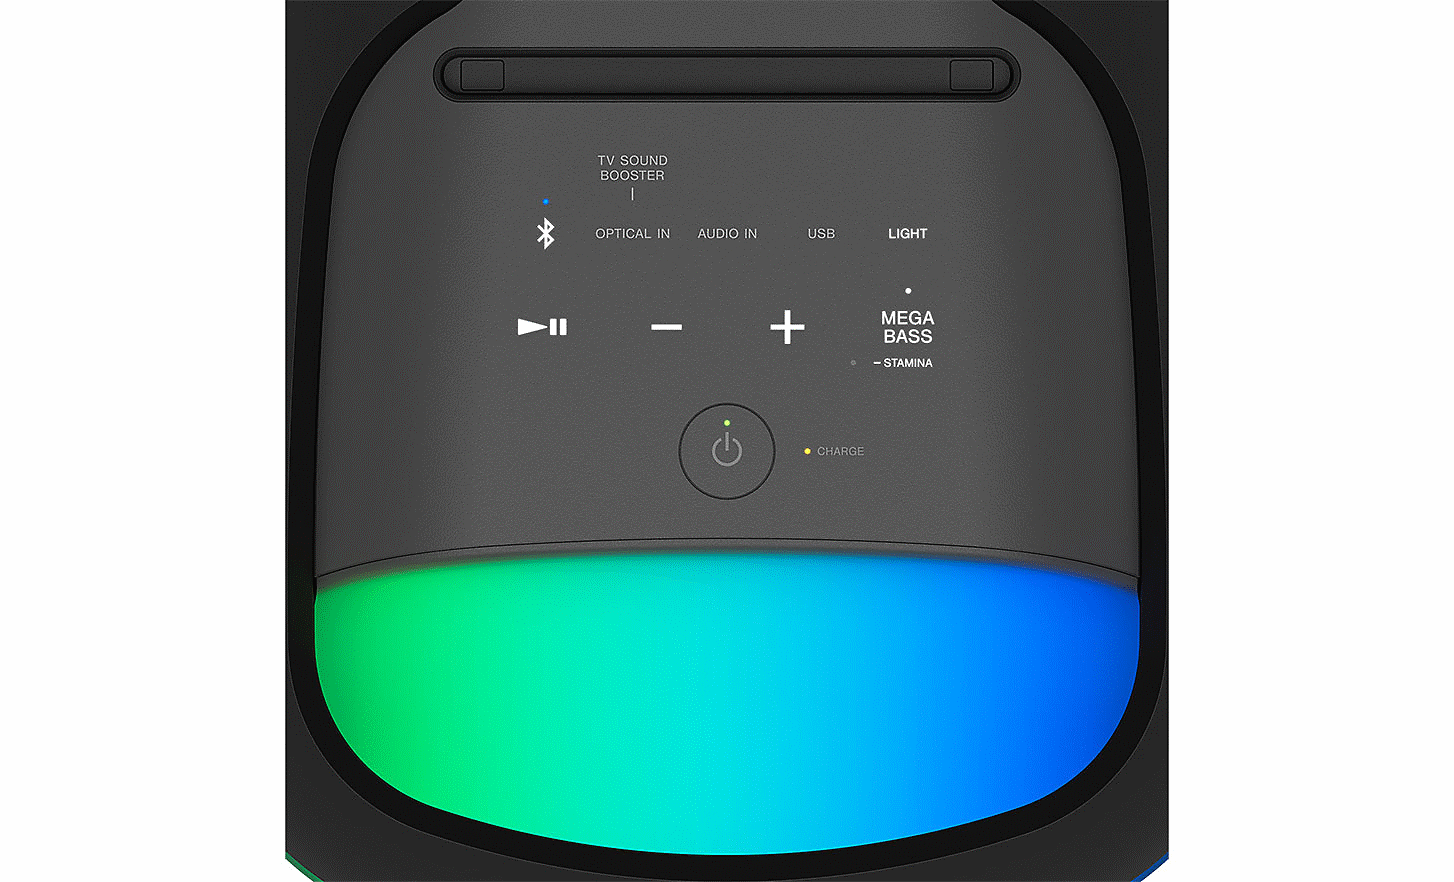 Imagen en primer plano del panel de control del SRS-XV800 con botones retroiluminados e iluminación ambiental verde y azul